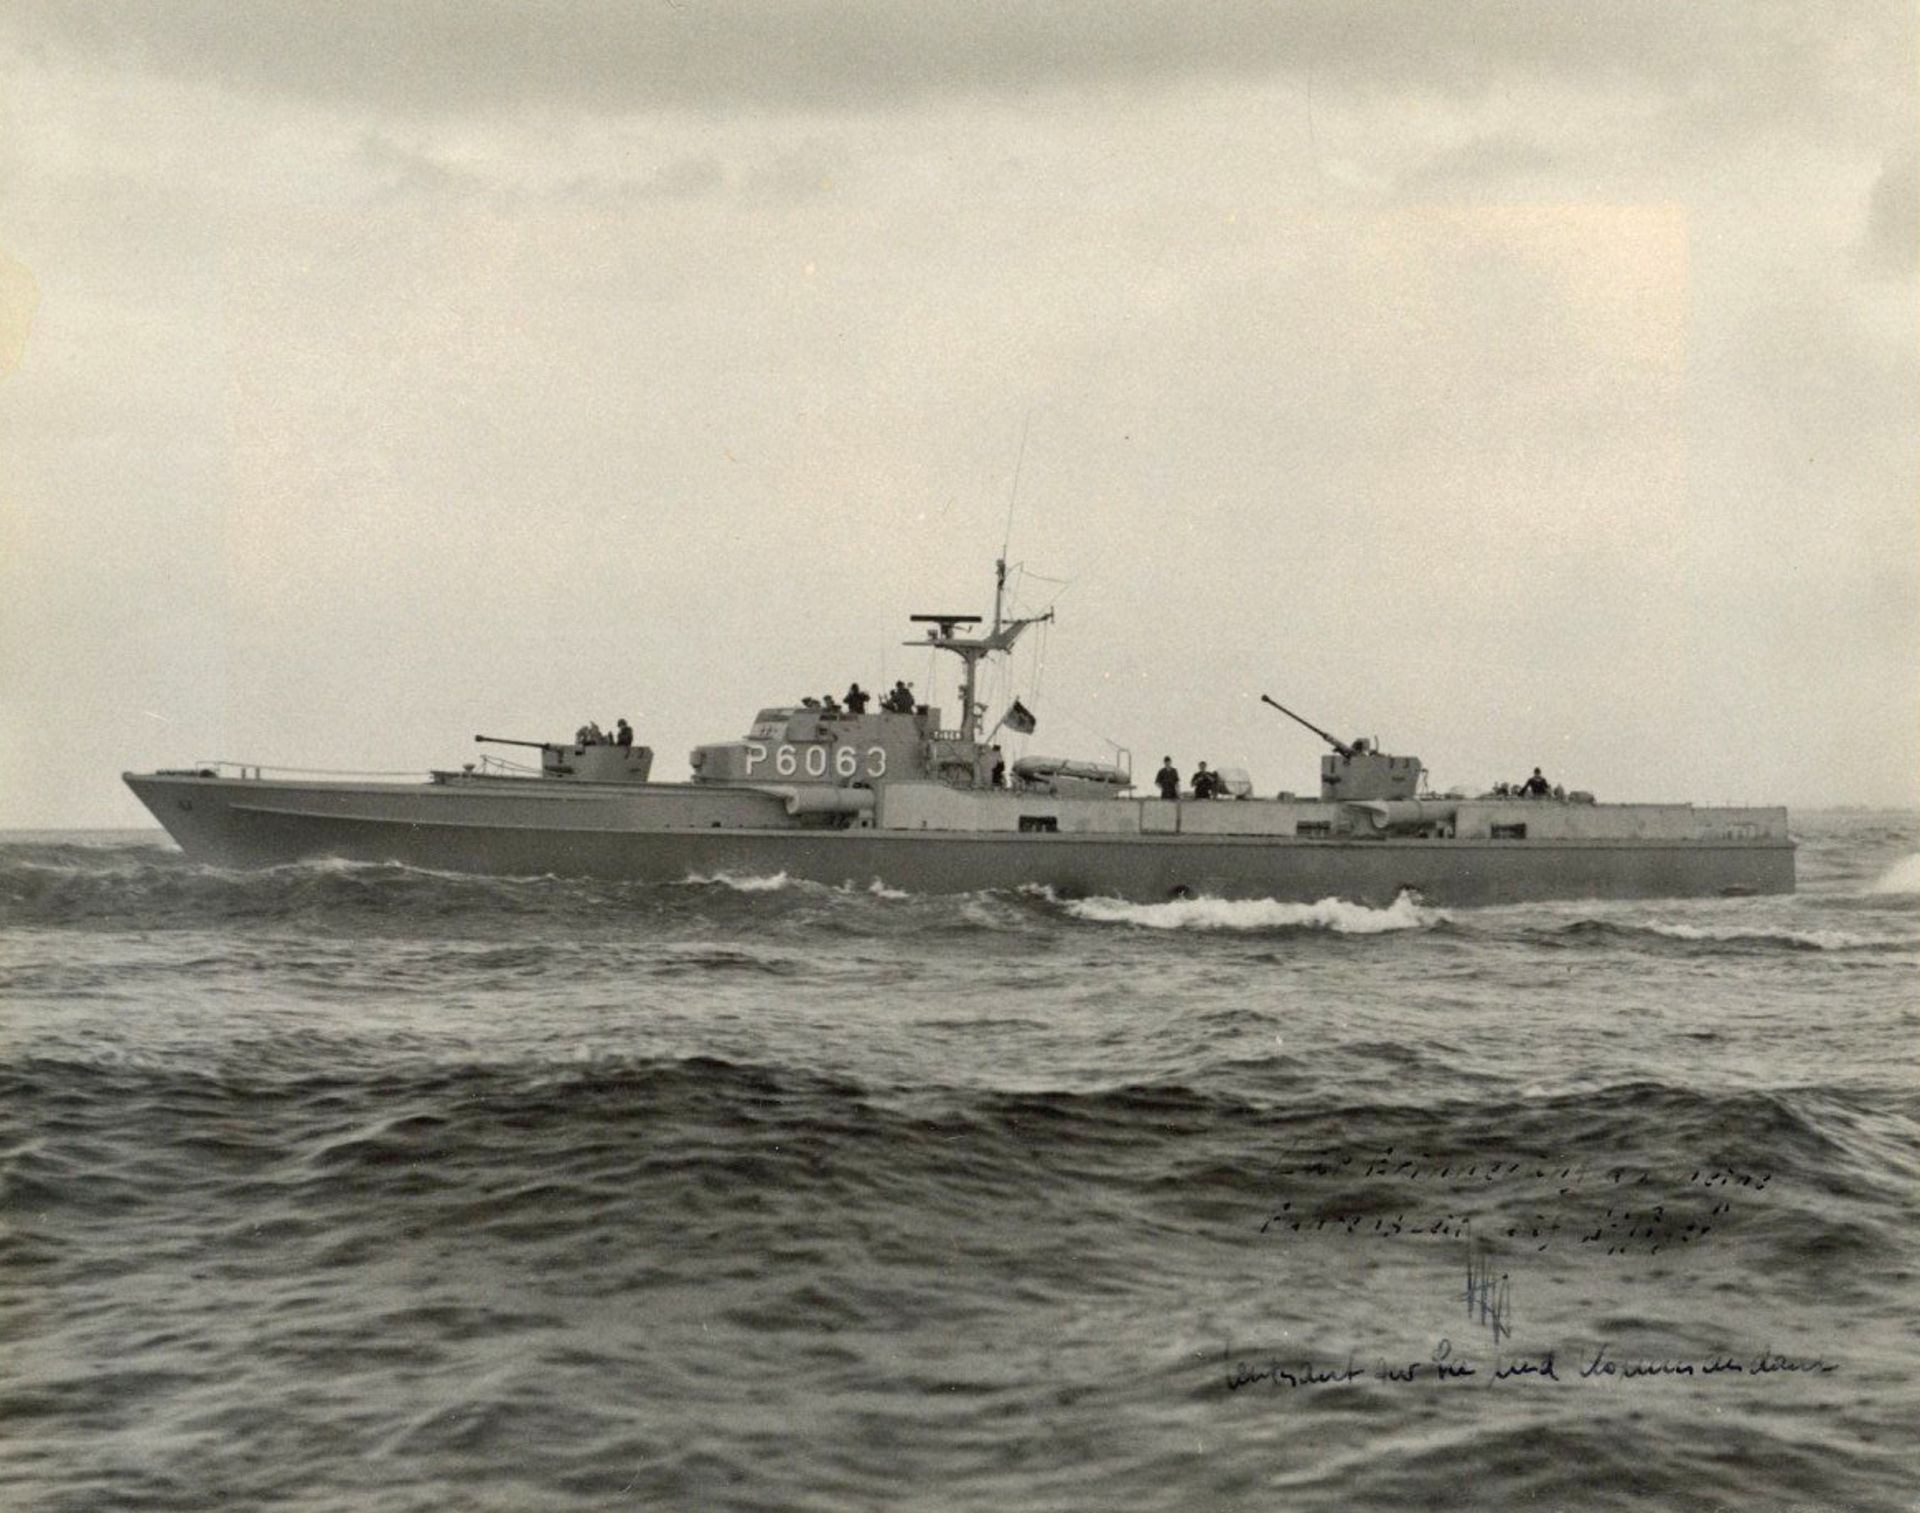 Marine Foto (24x30 cm) Bundesmarine Schnellboot Tiger, RS mit Unterschriften der Besatzung und